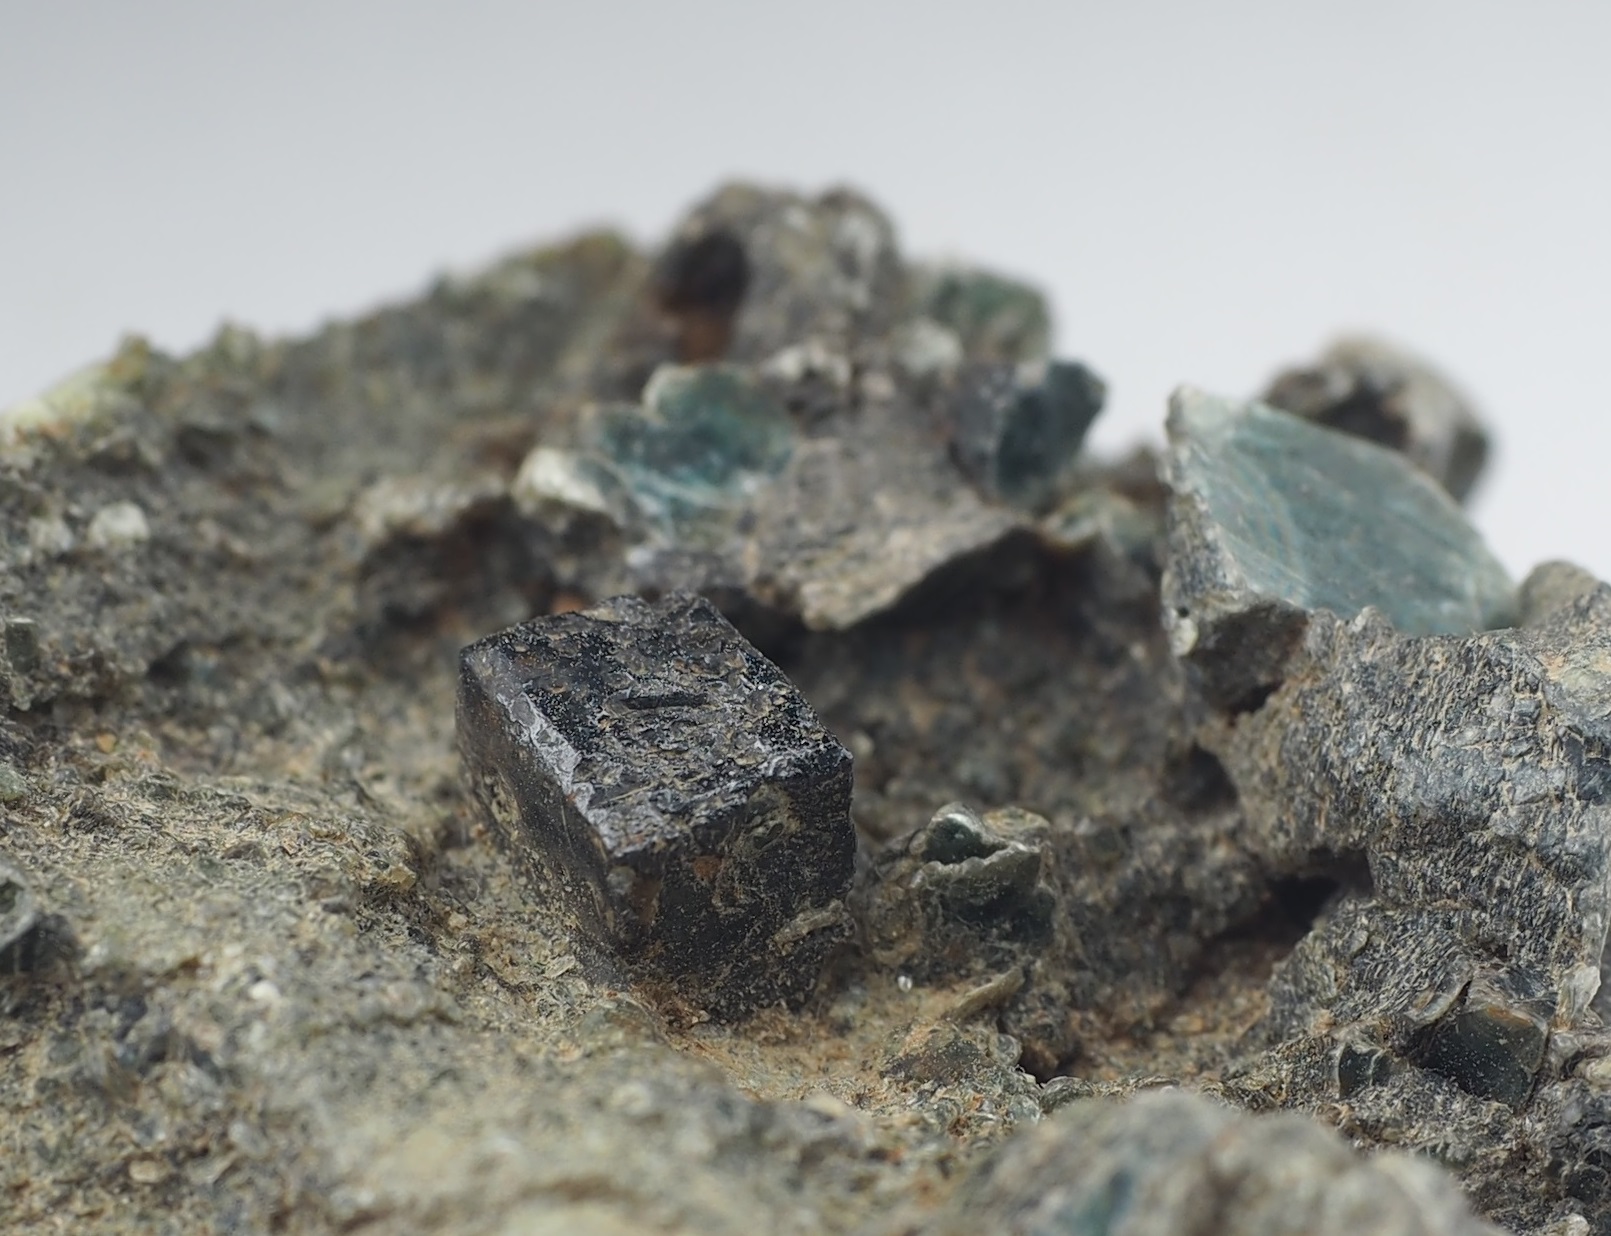 ペロブスカイト(perovskite、灰チタン石、ペロフスカイト)の黒色の結晶。画像幅約2cm。ロシア ウラル産。
